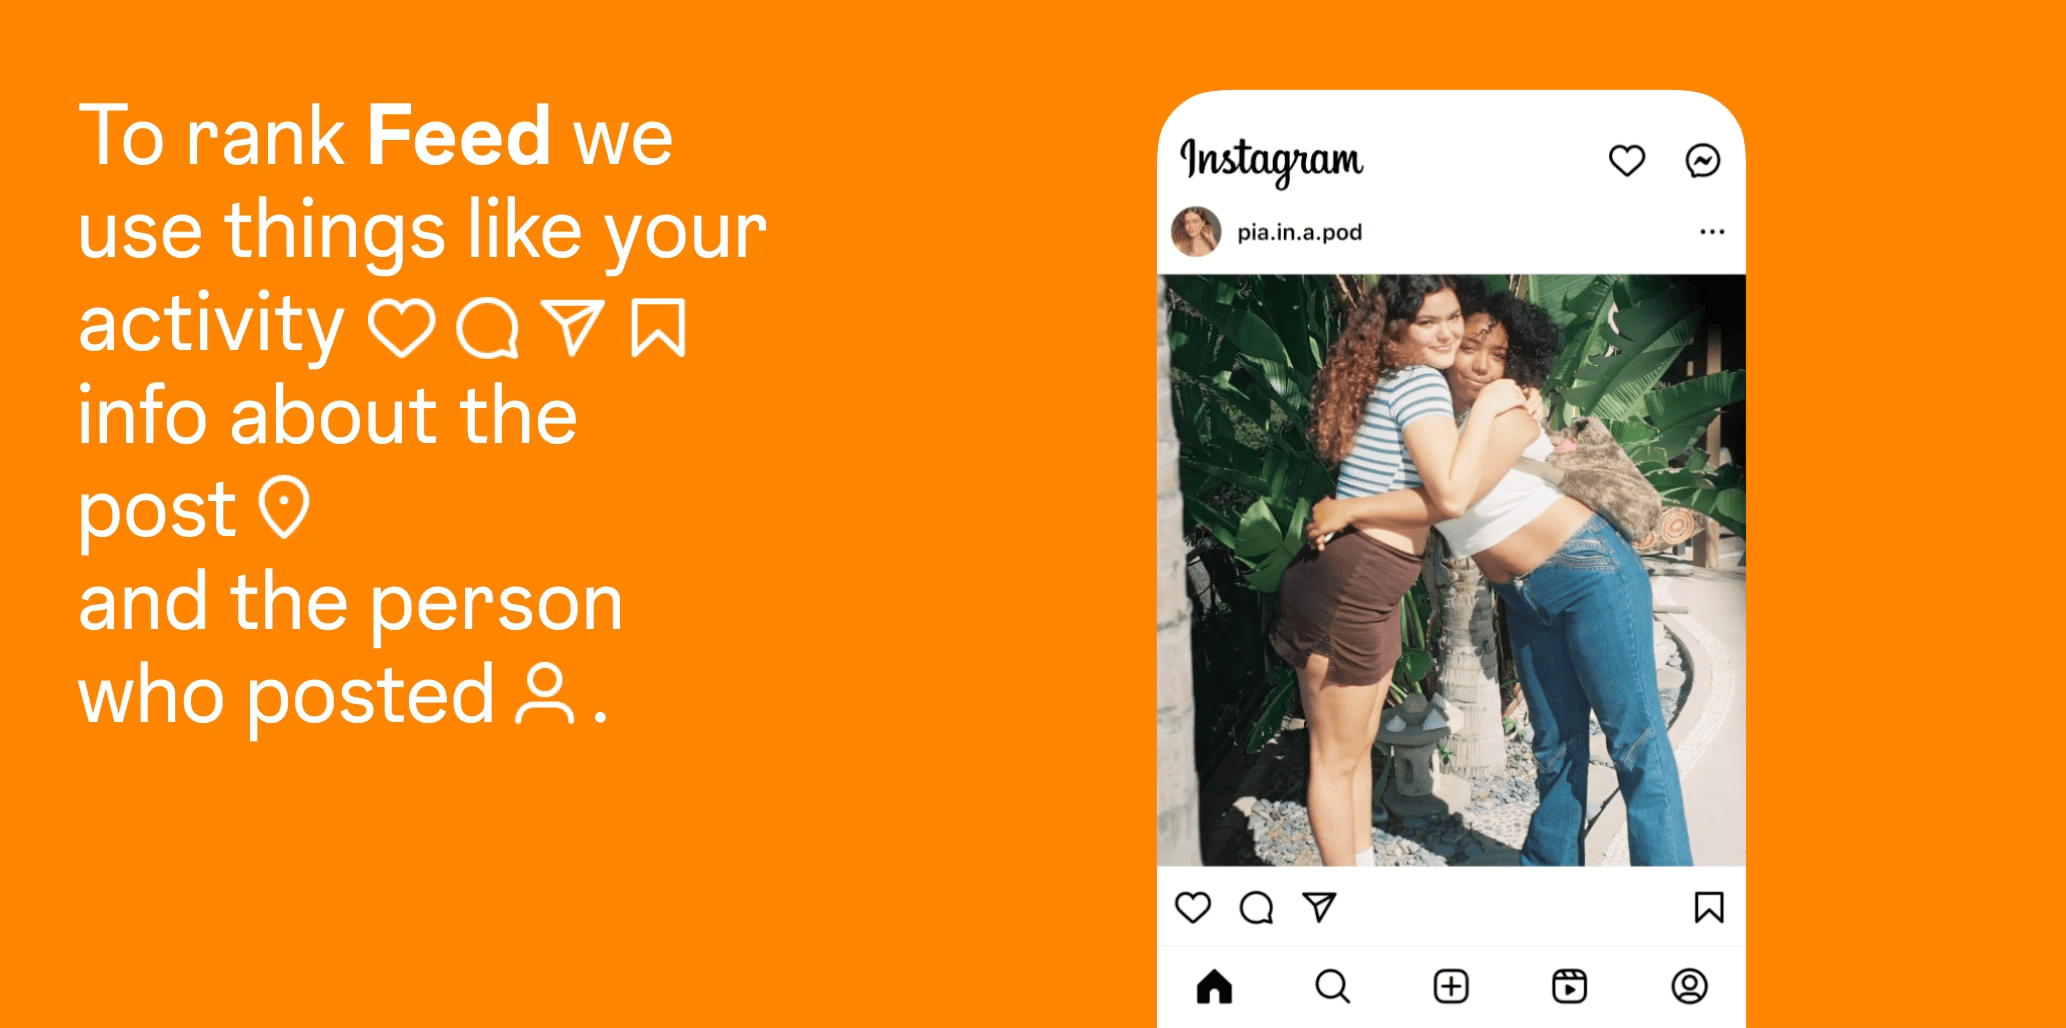 Instagram explica cómo funciona su algoritmo para recomendar contenido en la página de inicio. (Instagram)